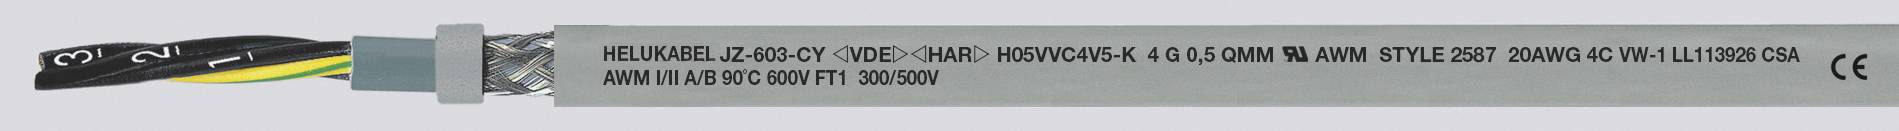 HELUKABEL JZ-603-CY Steuerleitung 4 G 1.50 mm² Grau 83754-1000 1000 m